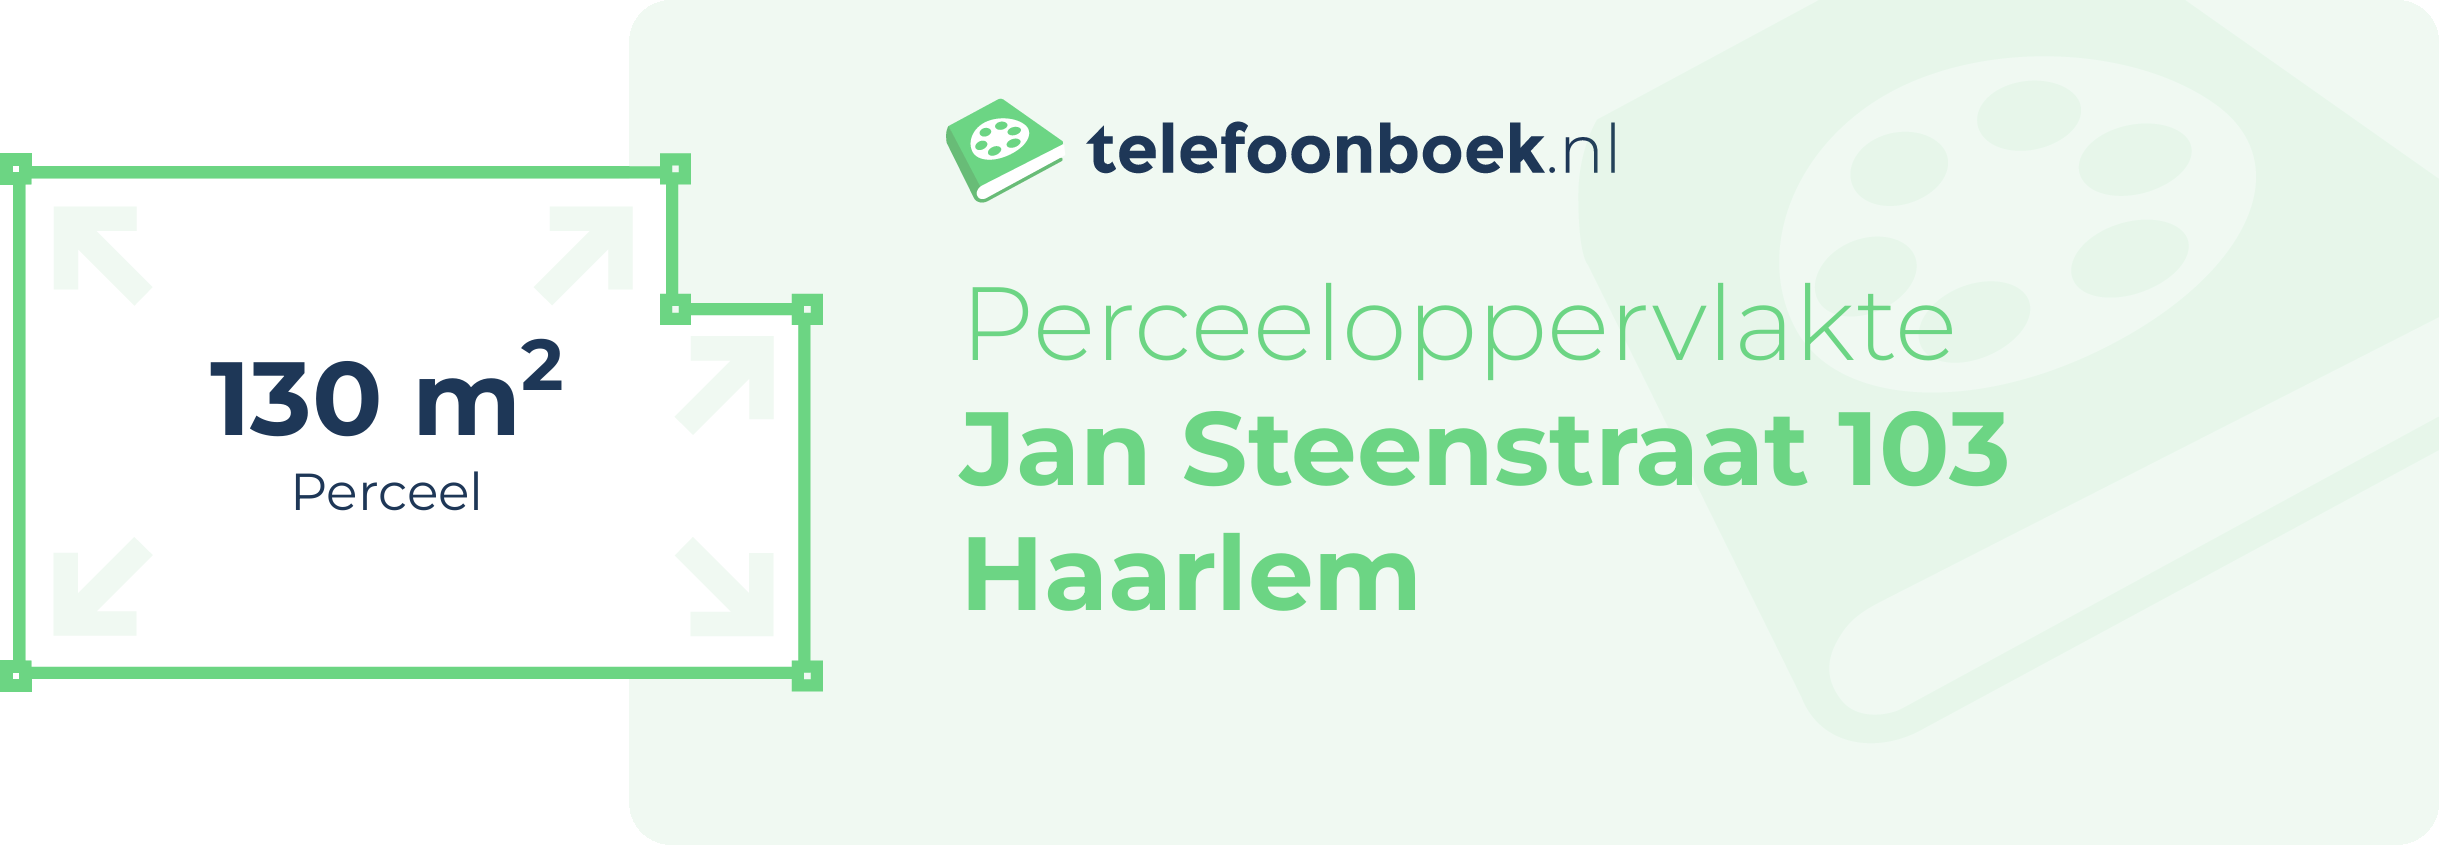 Perceeloppervlakte Jan Steenstraat 103 Haarlem